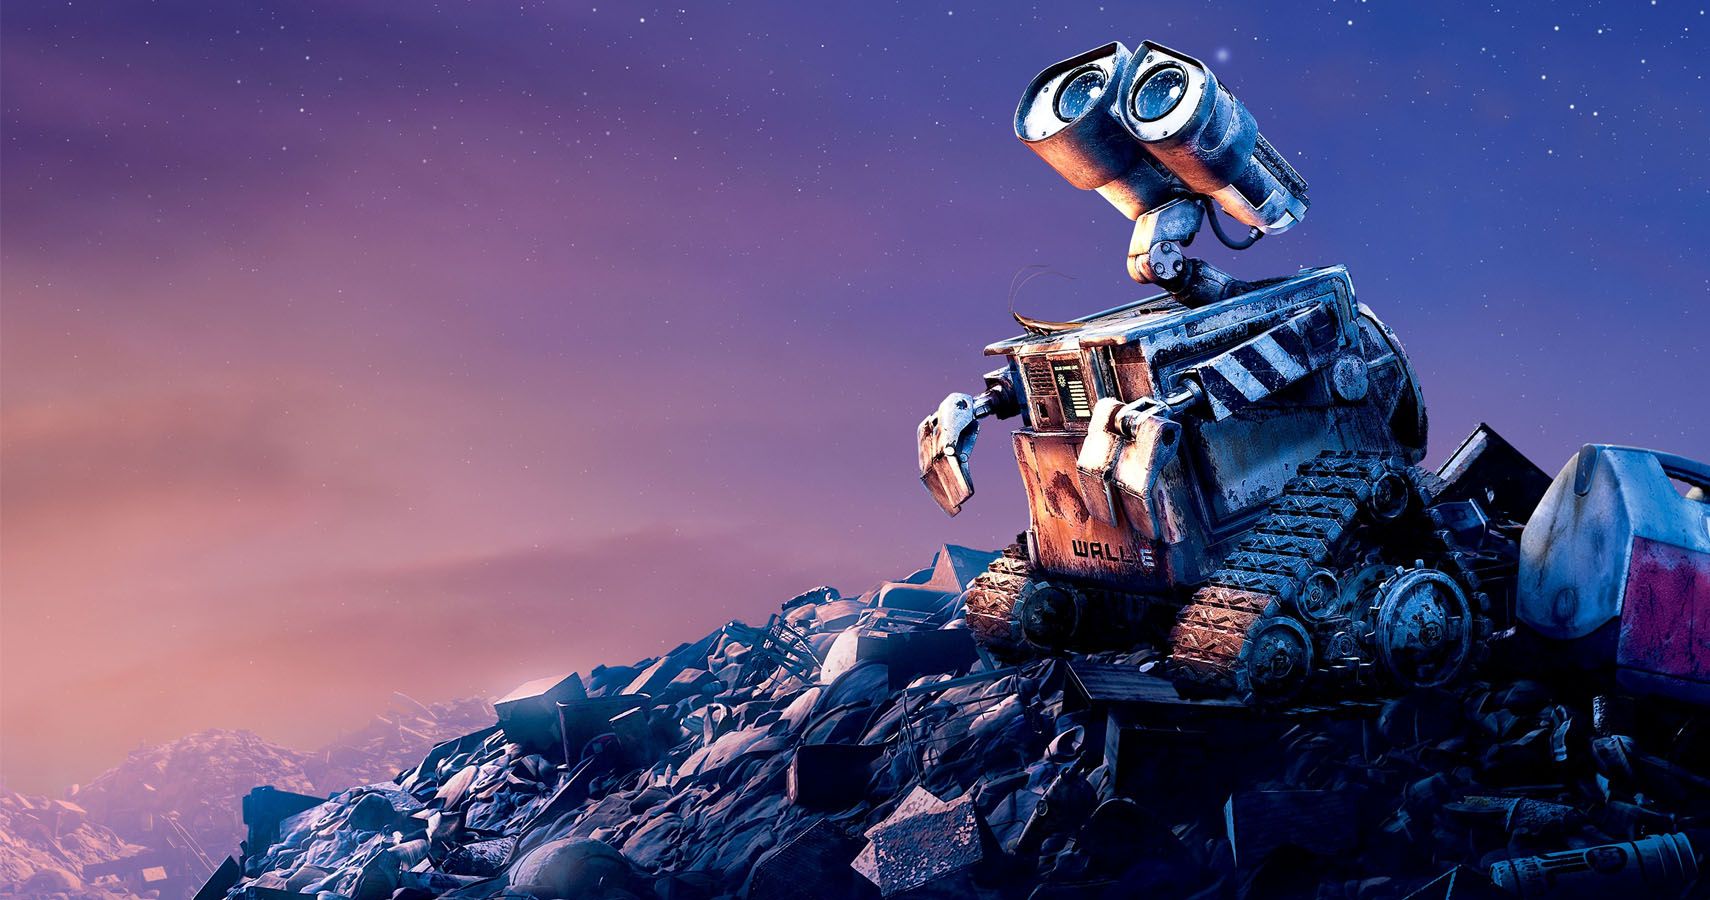 10 Things That Make No Sense About WALL-E